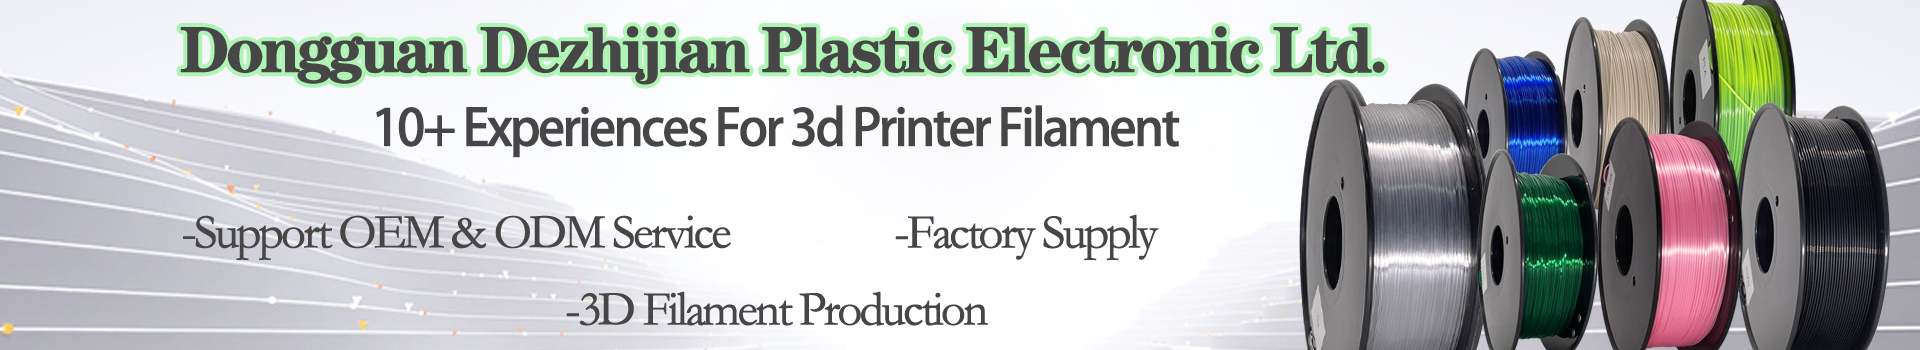 Pinrui 3D tiskárna 1,75 mmpetg vlákna černá barva pro 3D tiskárnu